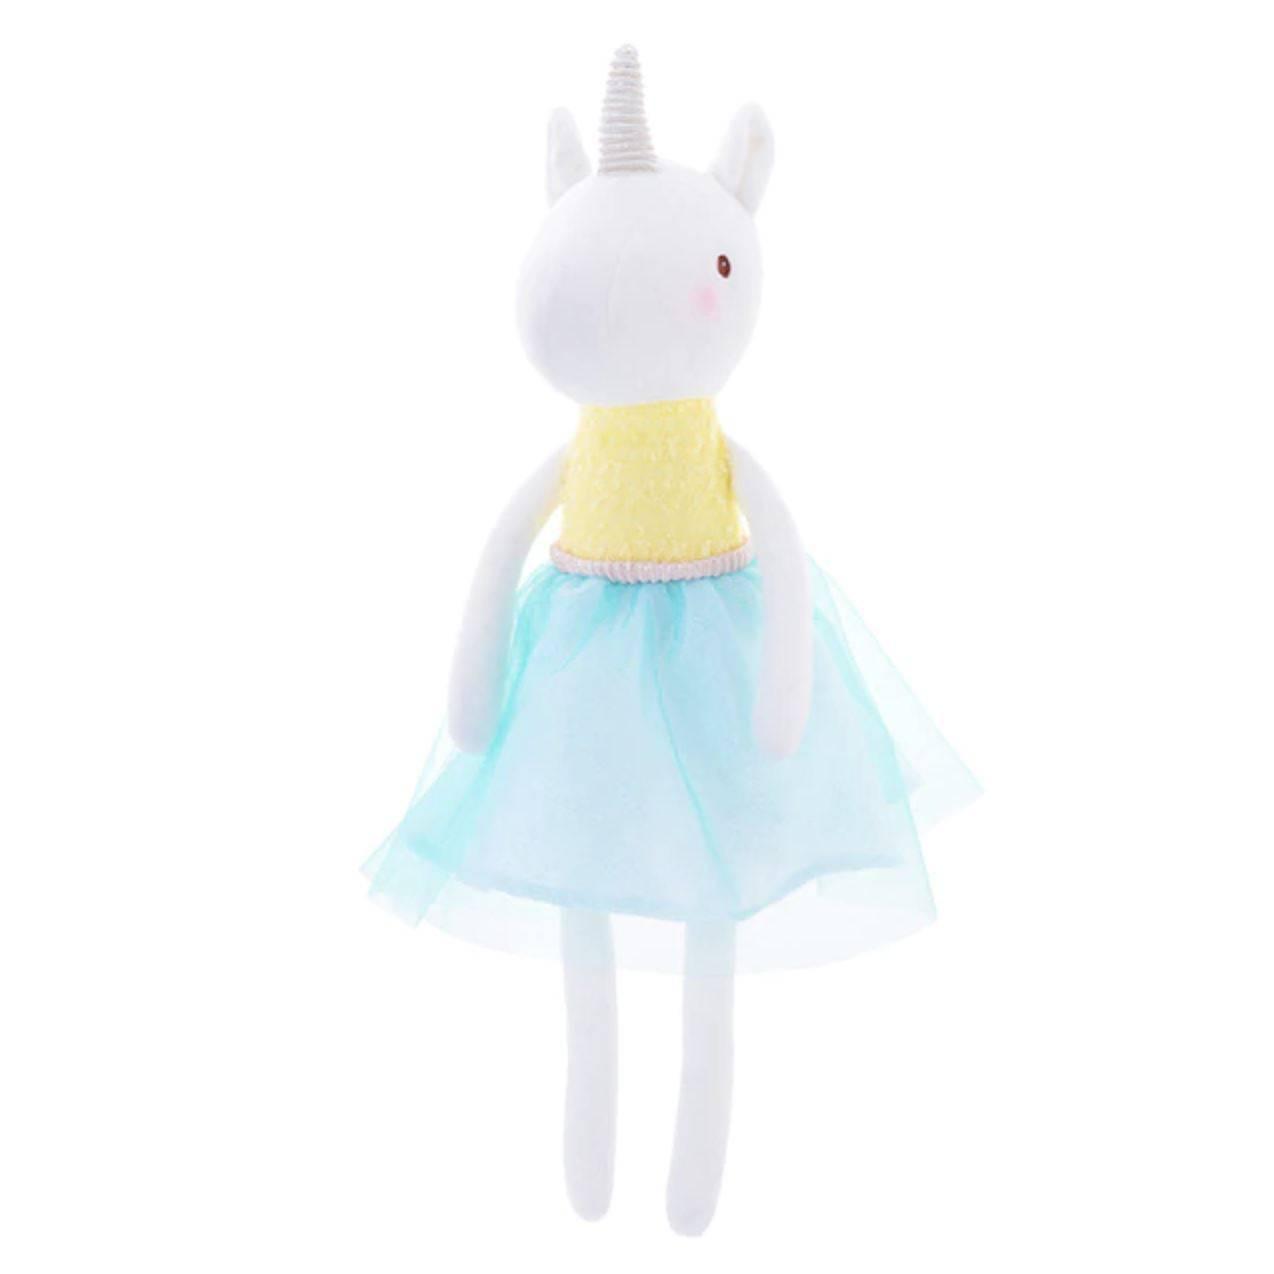 Unicorn plush Yellow Doll - A Unicorn